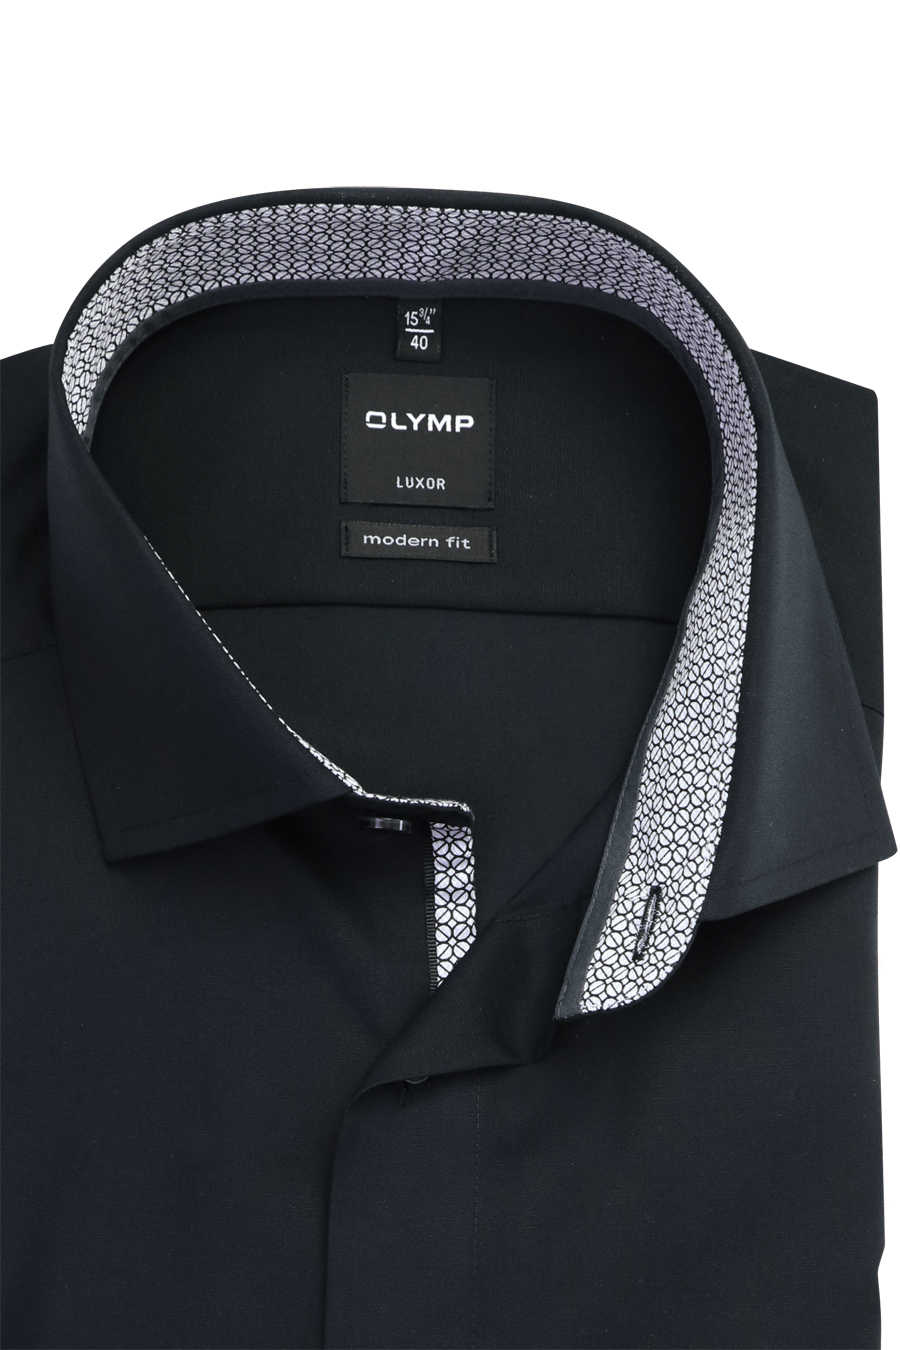 OLYMP Luxor langer schwarz extra modern Haifischkragen Hemd Arm fit